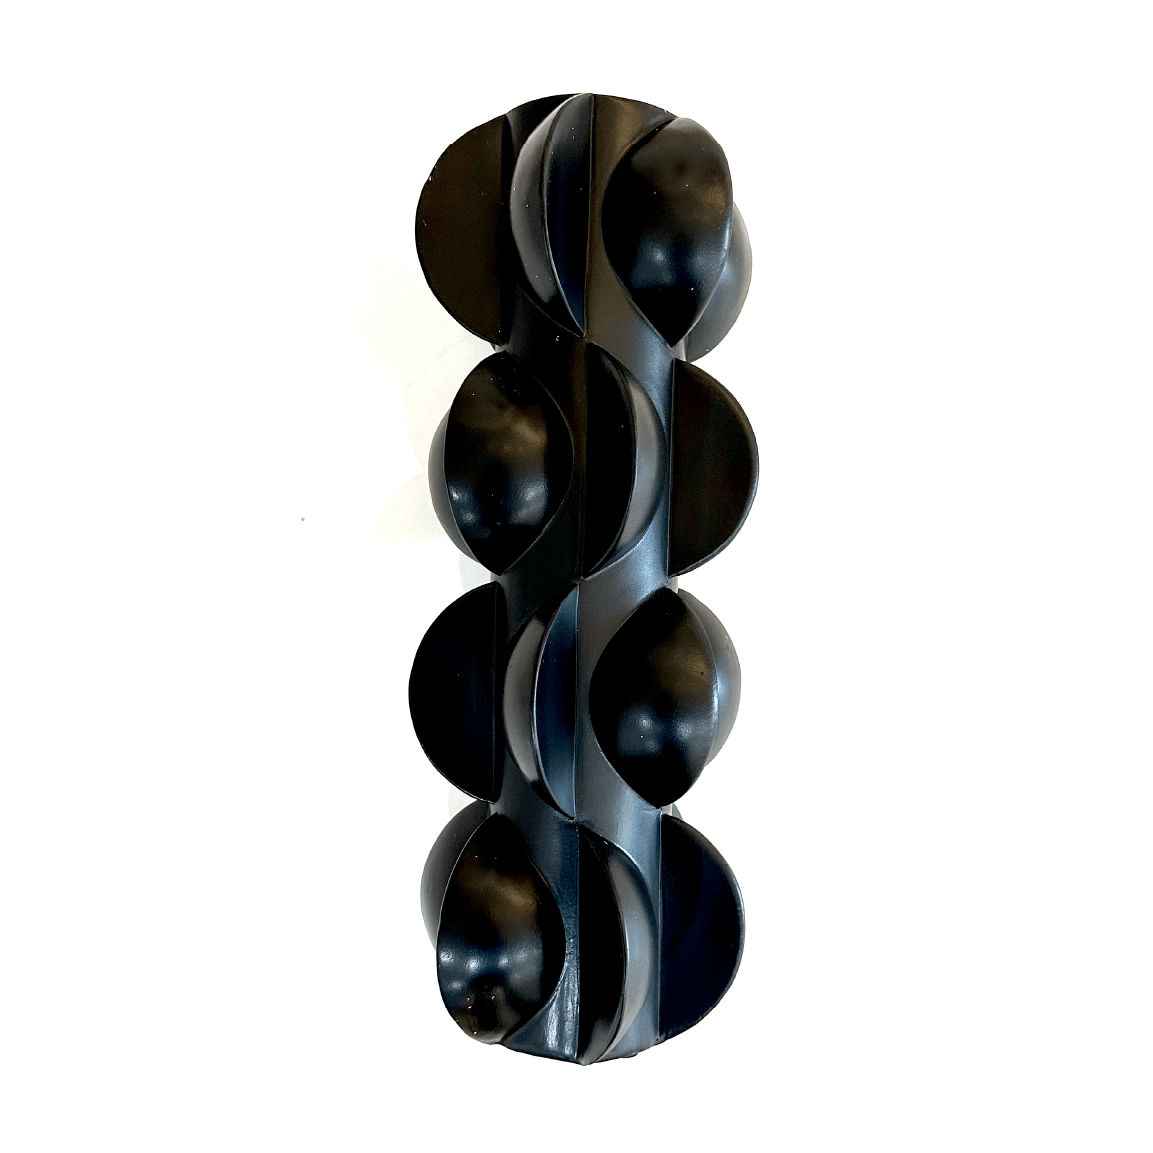 Black Wedge Vase